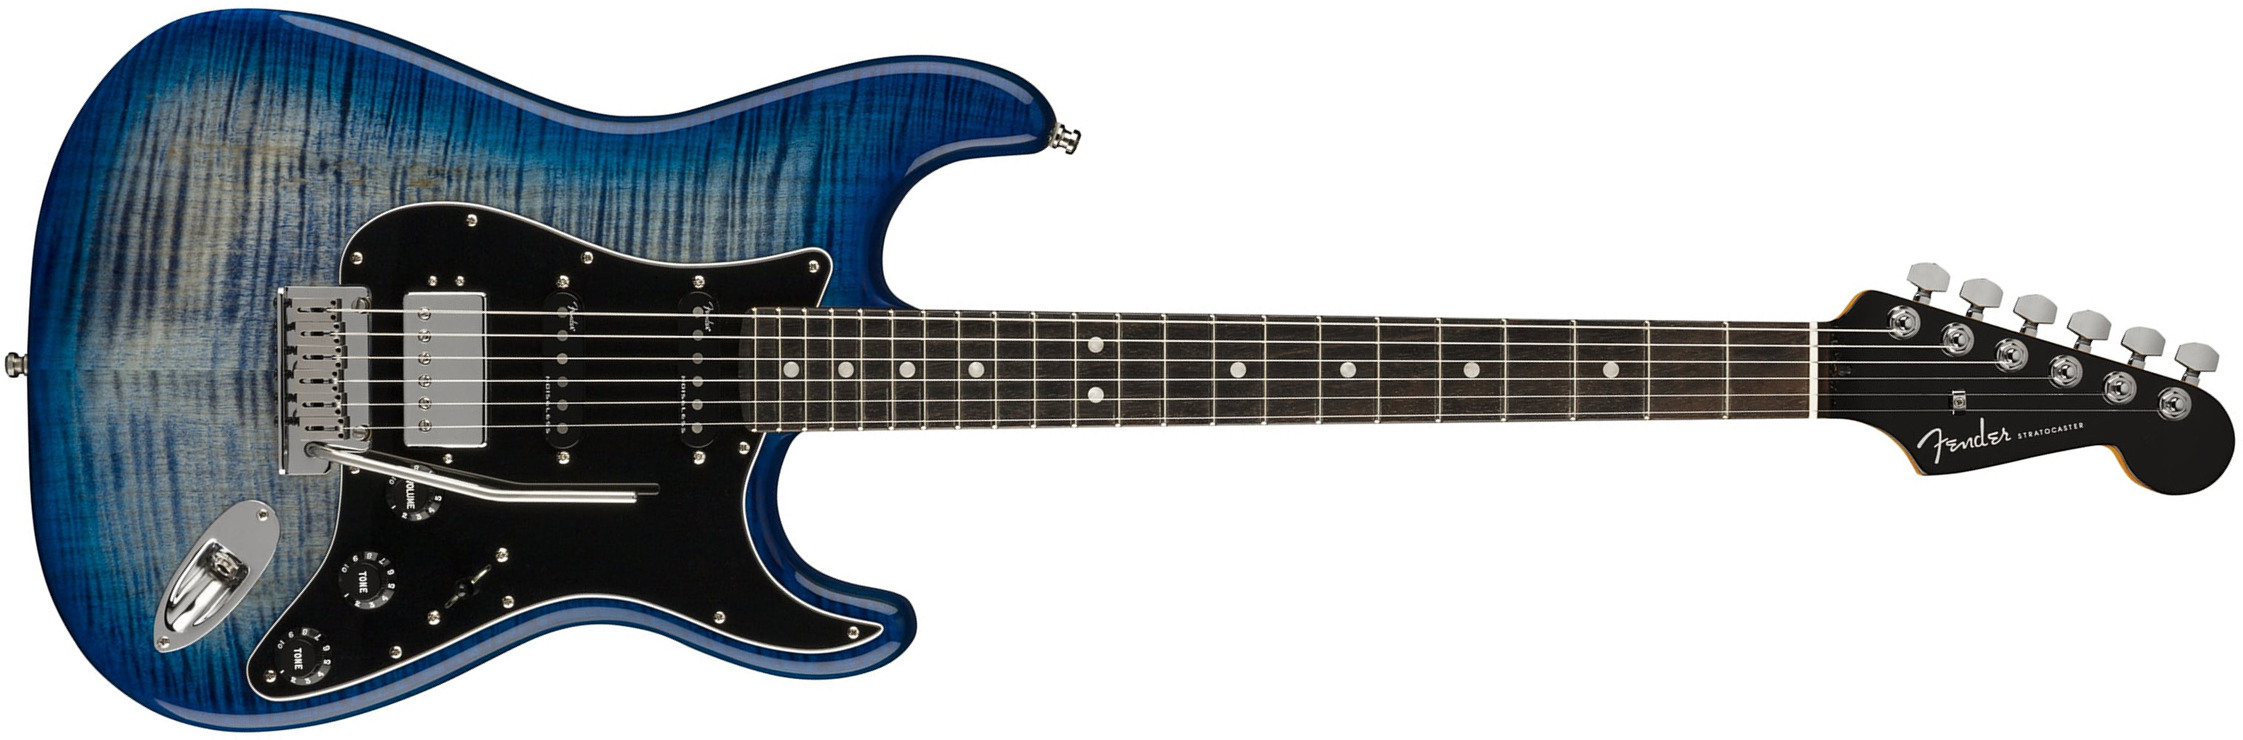 Fender Strat American Ultra Ltd Usa Hss Trem Eb - Denim Burst - Guitare Électrique Forme Str - Main picture